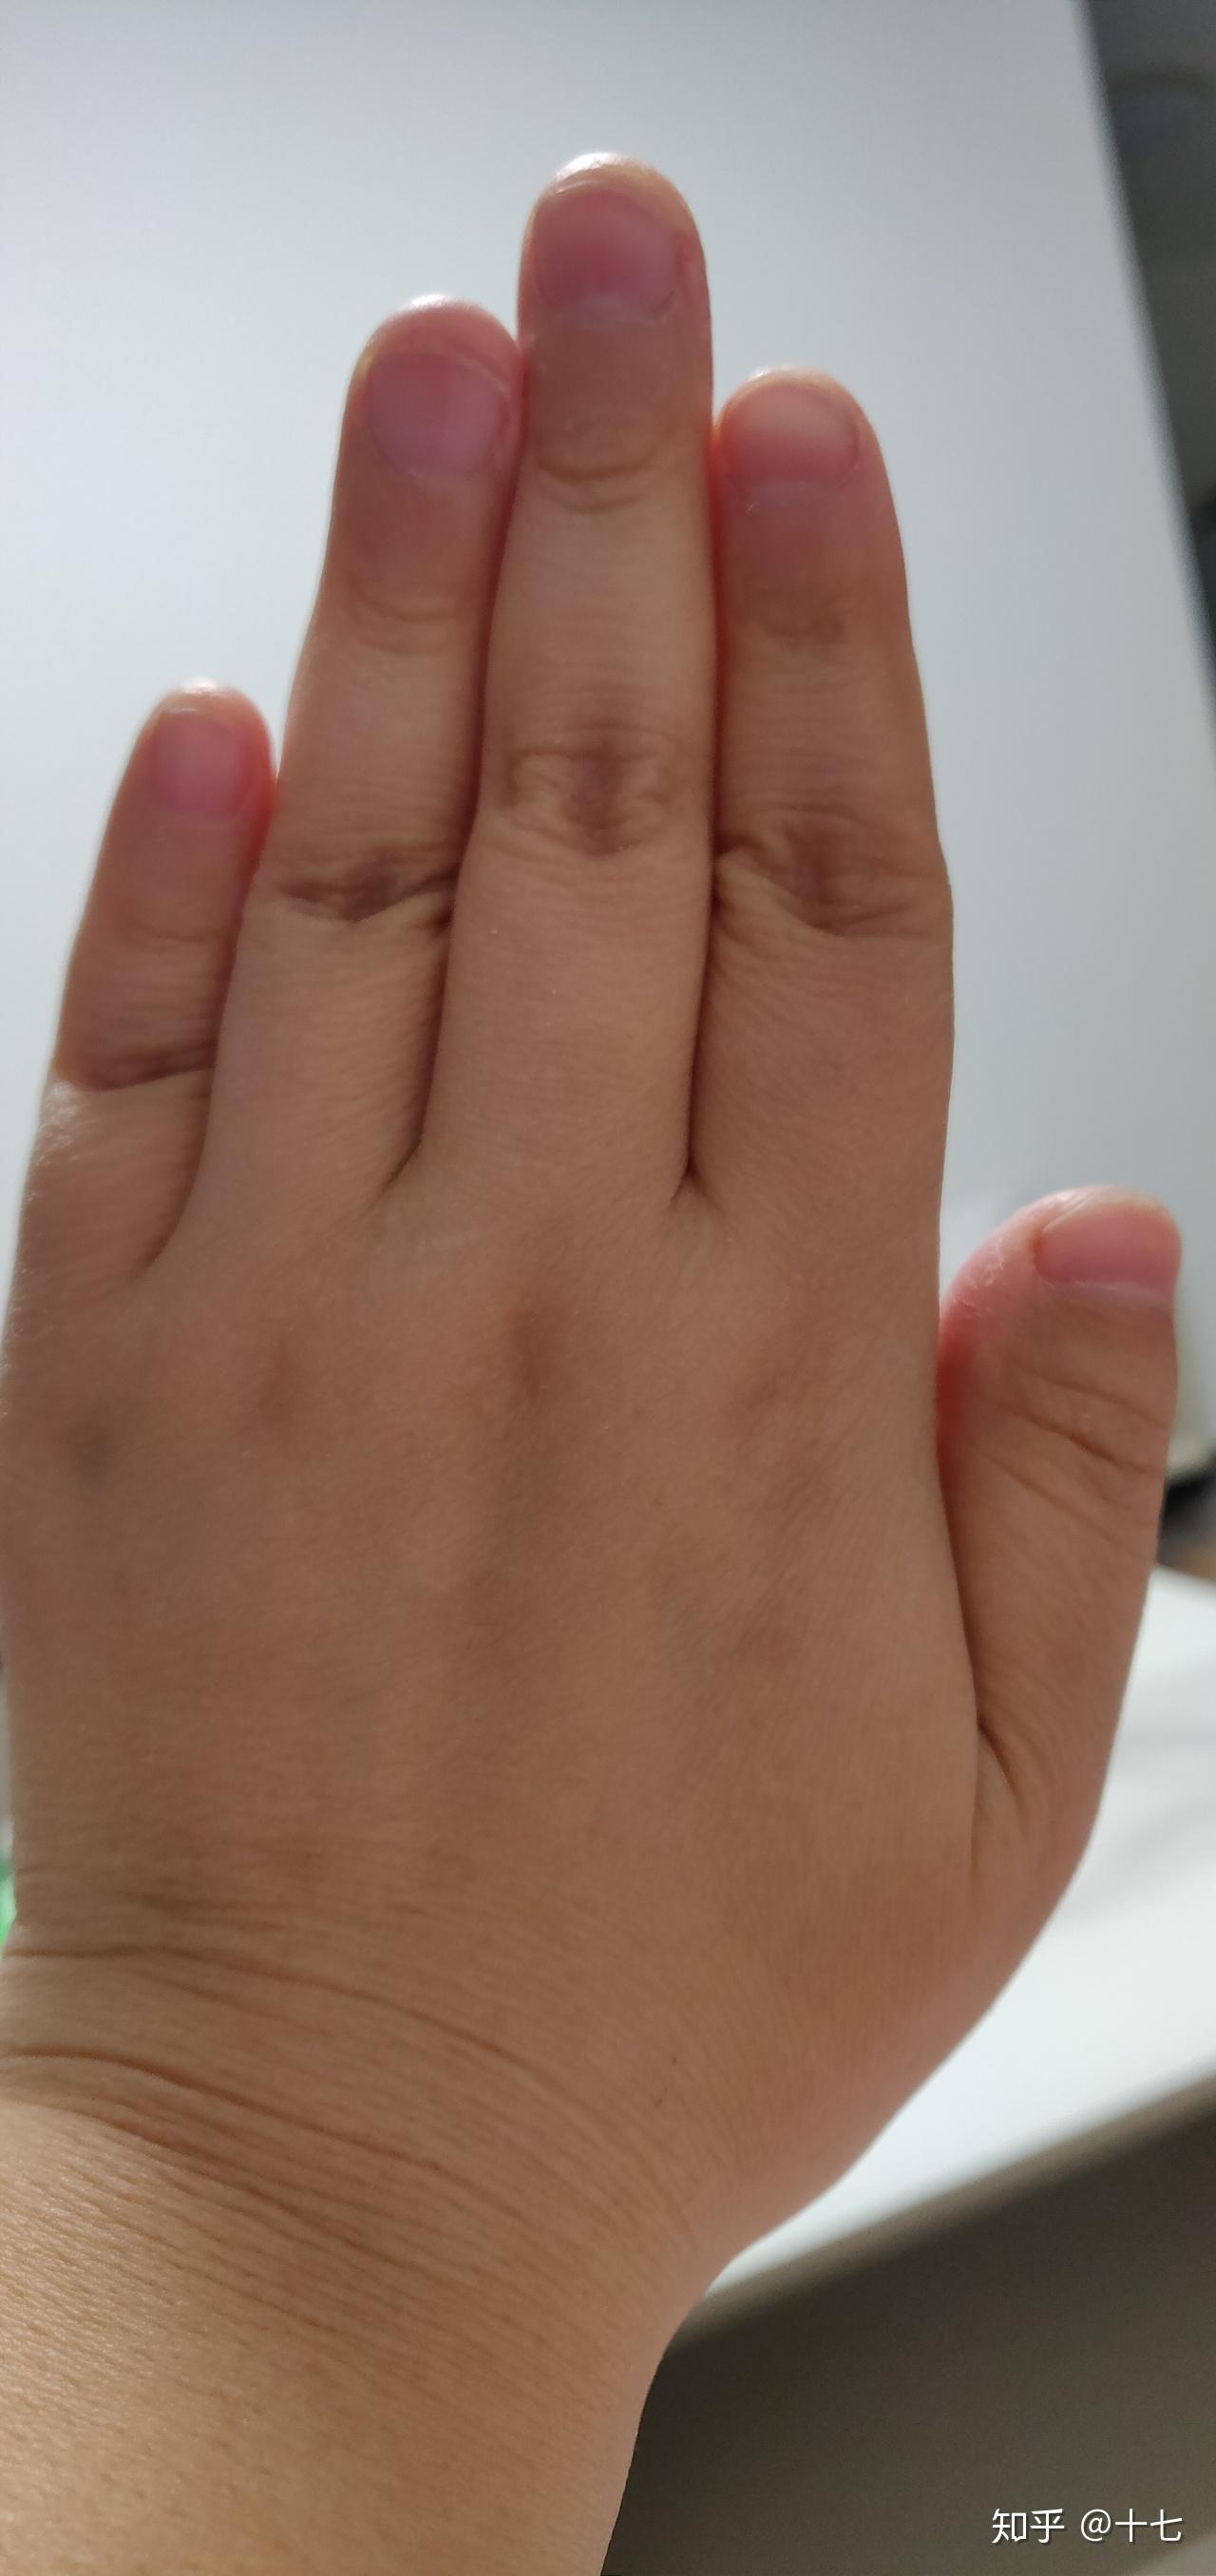 为什么我的大拇指又宽又短? 